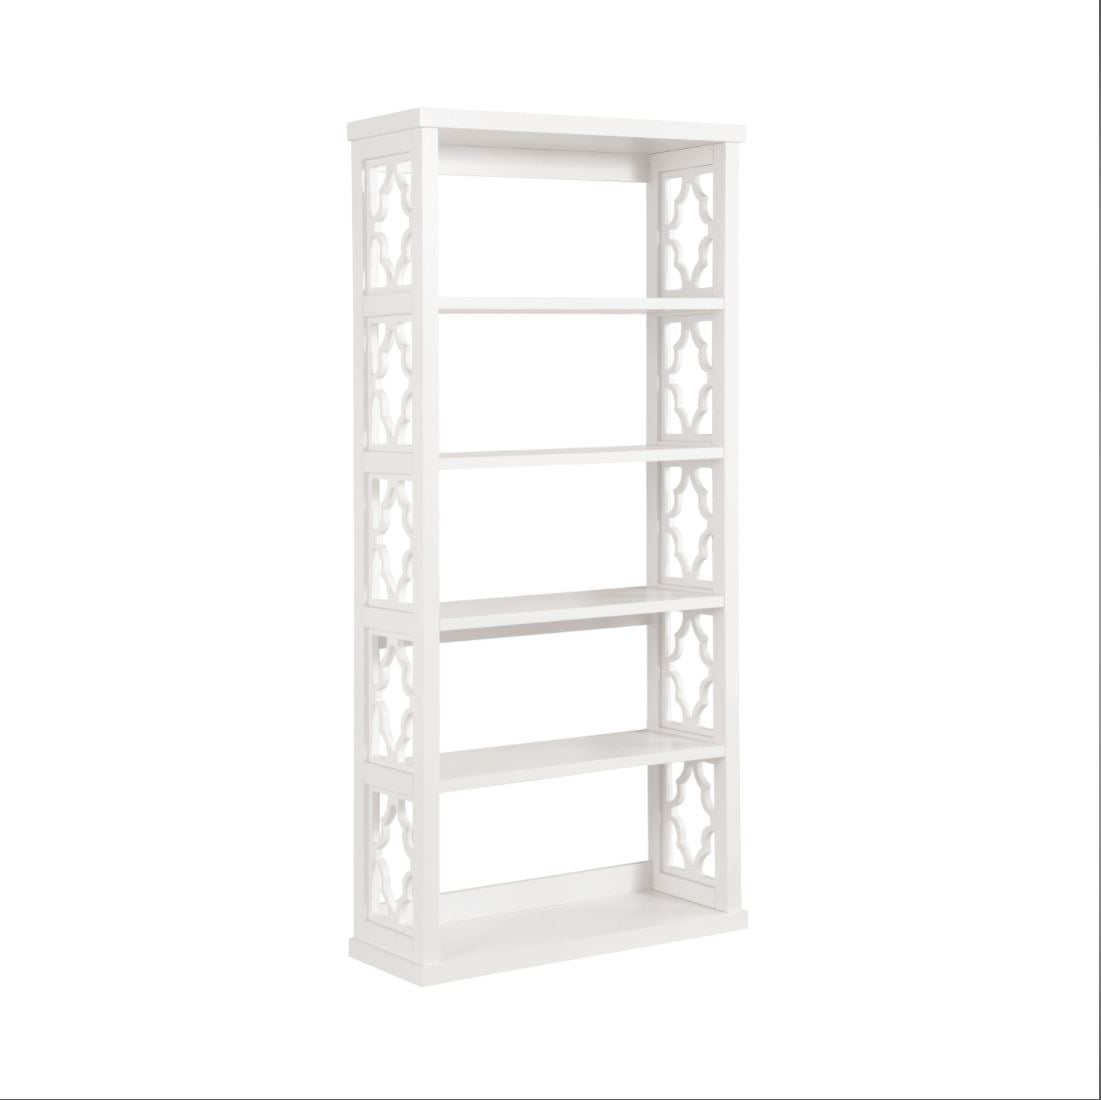 Trellis Pattern Side Panels 4 Tier Bookcase Book Shelf In White